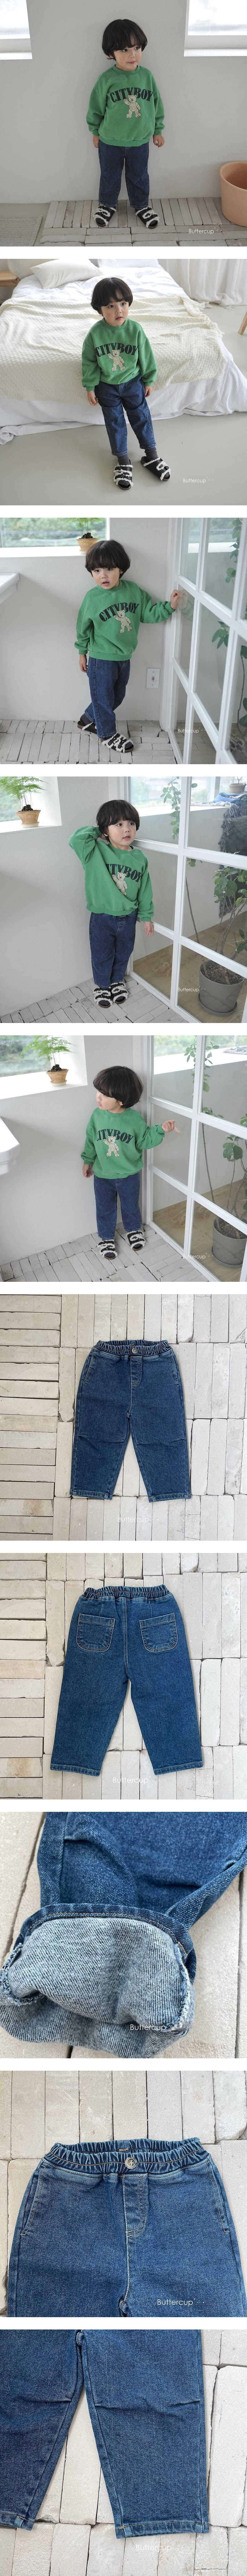 Buttercup - Korean Children Fashion - #prettylittlegirls - Pintuck Jeans